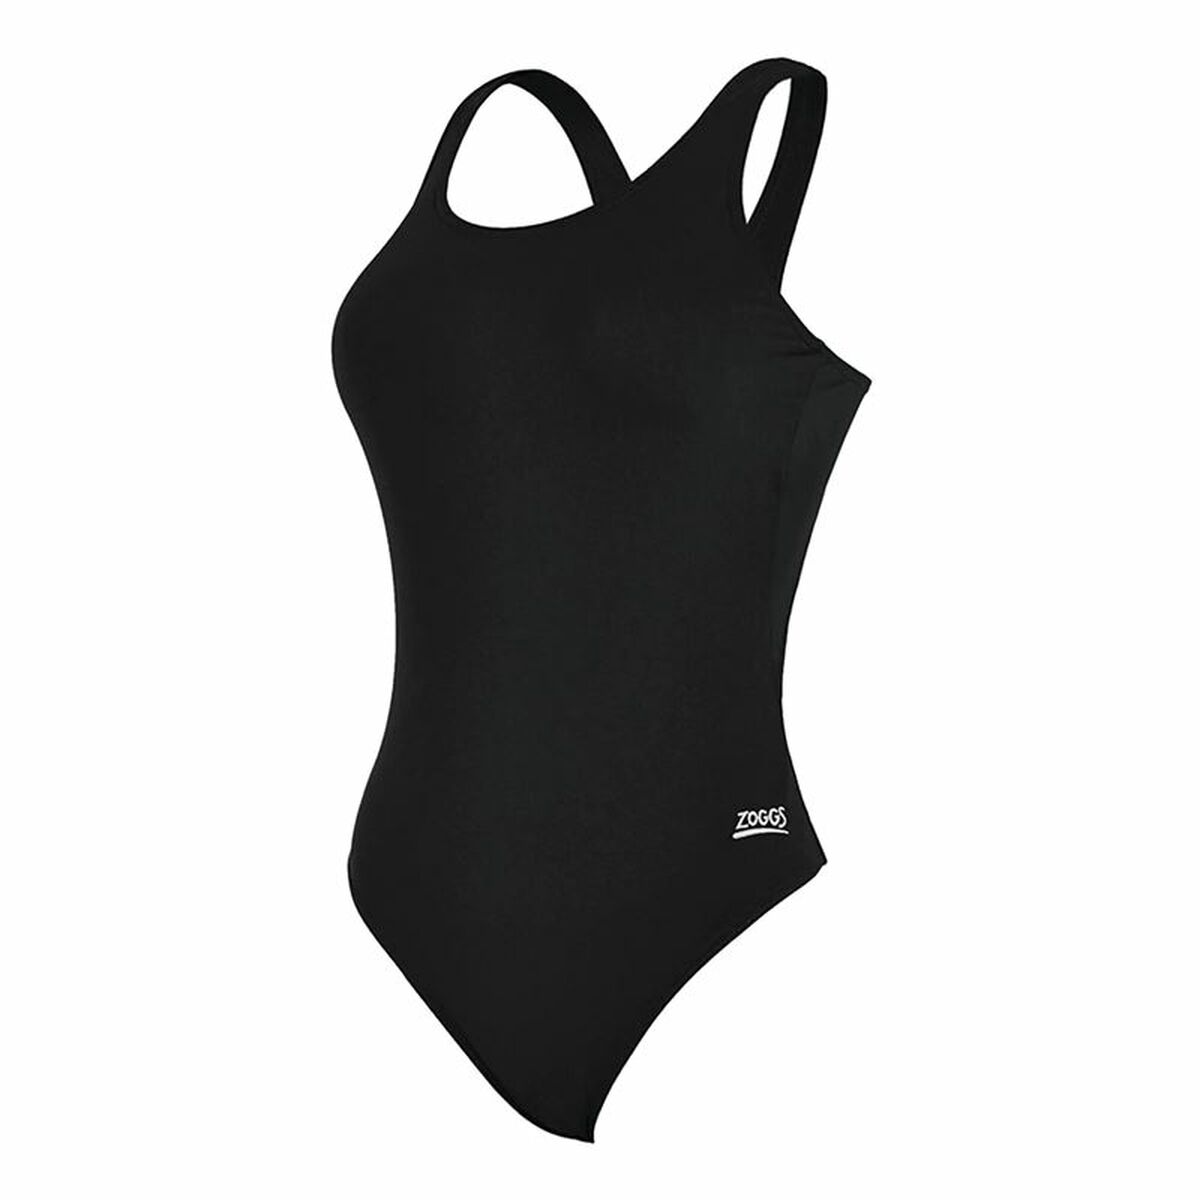 Osta tuote Naisten uimapuku Zoggs Cottesloe Powerback Musta (Koko: 40) verkkokaupastamme Korhone: Urheilu & Vapaa-aika 20% alennuksella koodilla VIIKONLOPPU